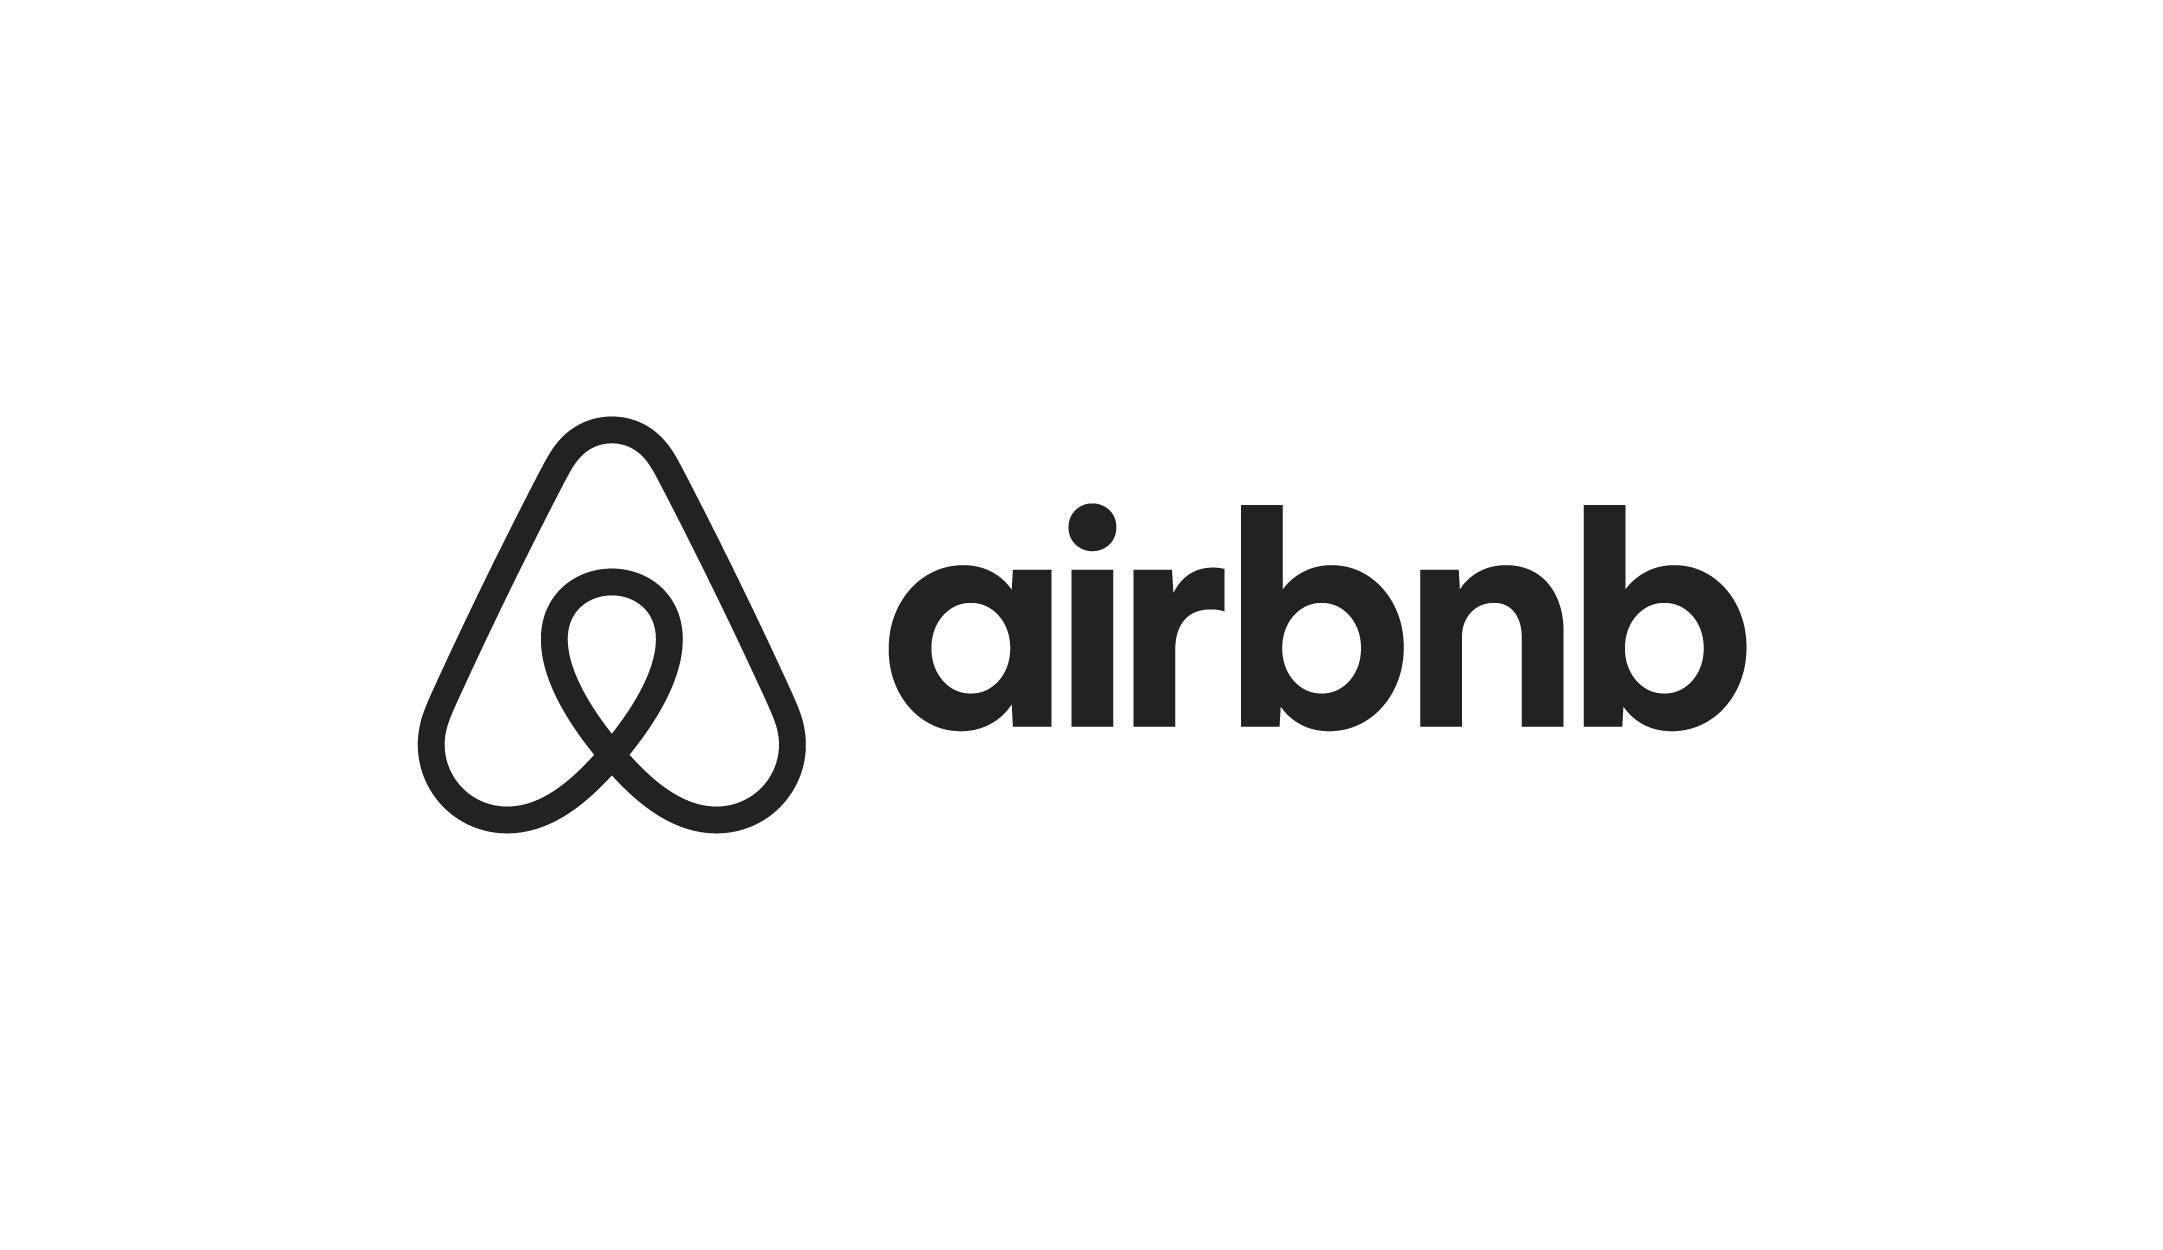 an air bnb logo on a white background